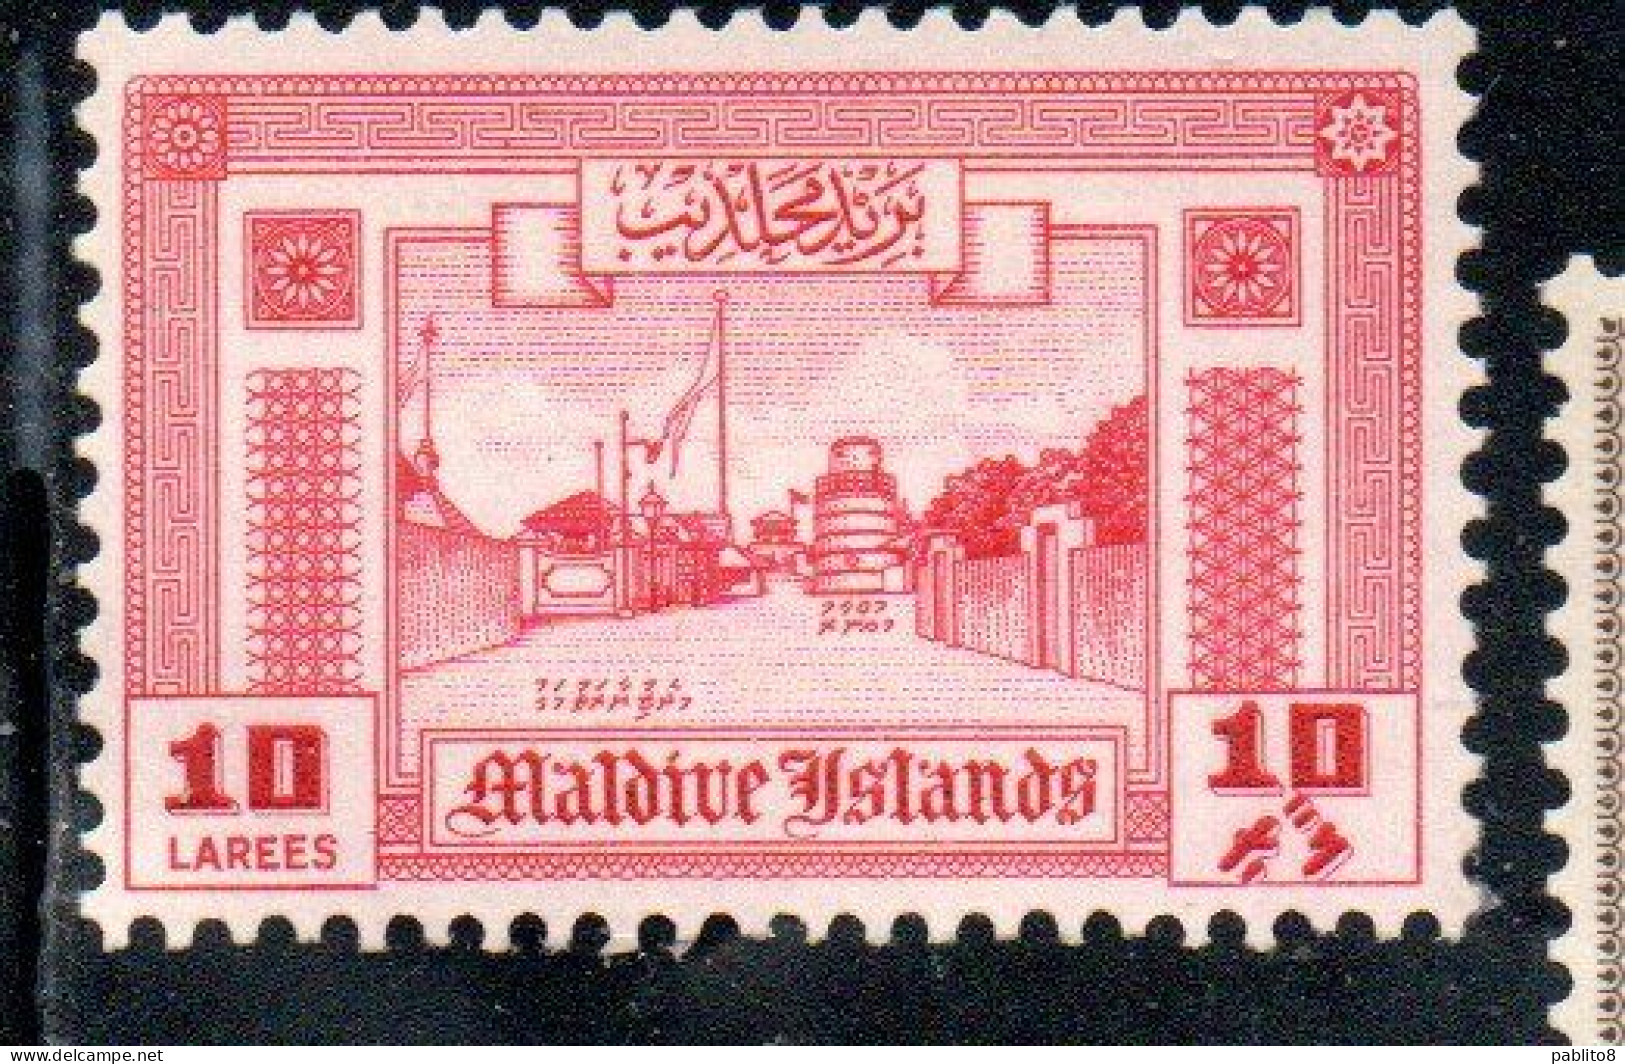 MALDIVES ISLANDS ISOLE MALDIVE BRITISH PRETOCTARATE 1960 ROAD TO MINARET 10L MNH - Maldive (...-1965)